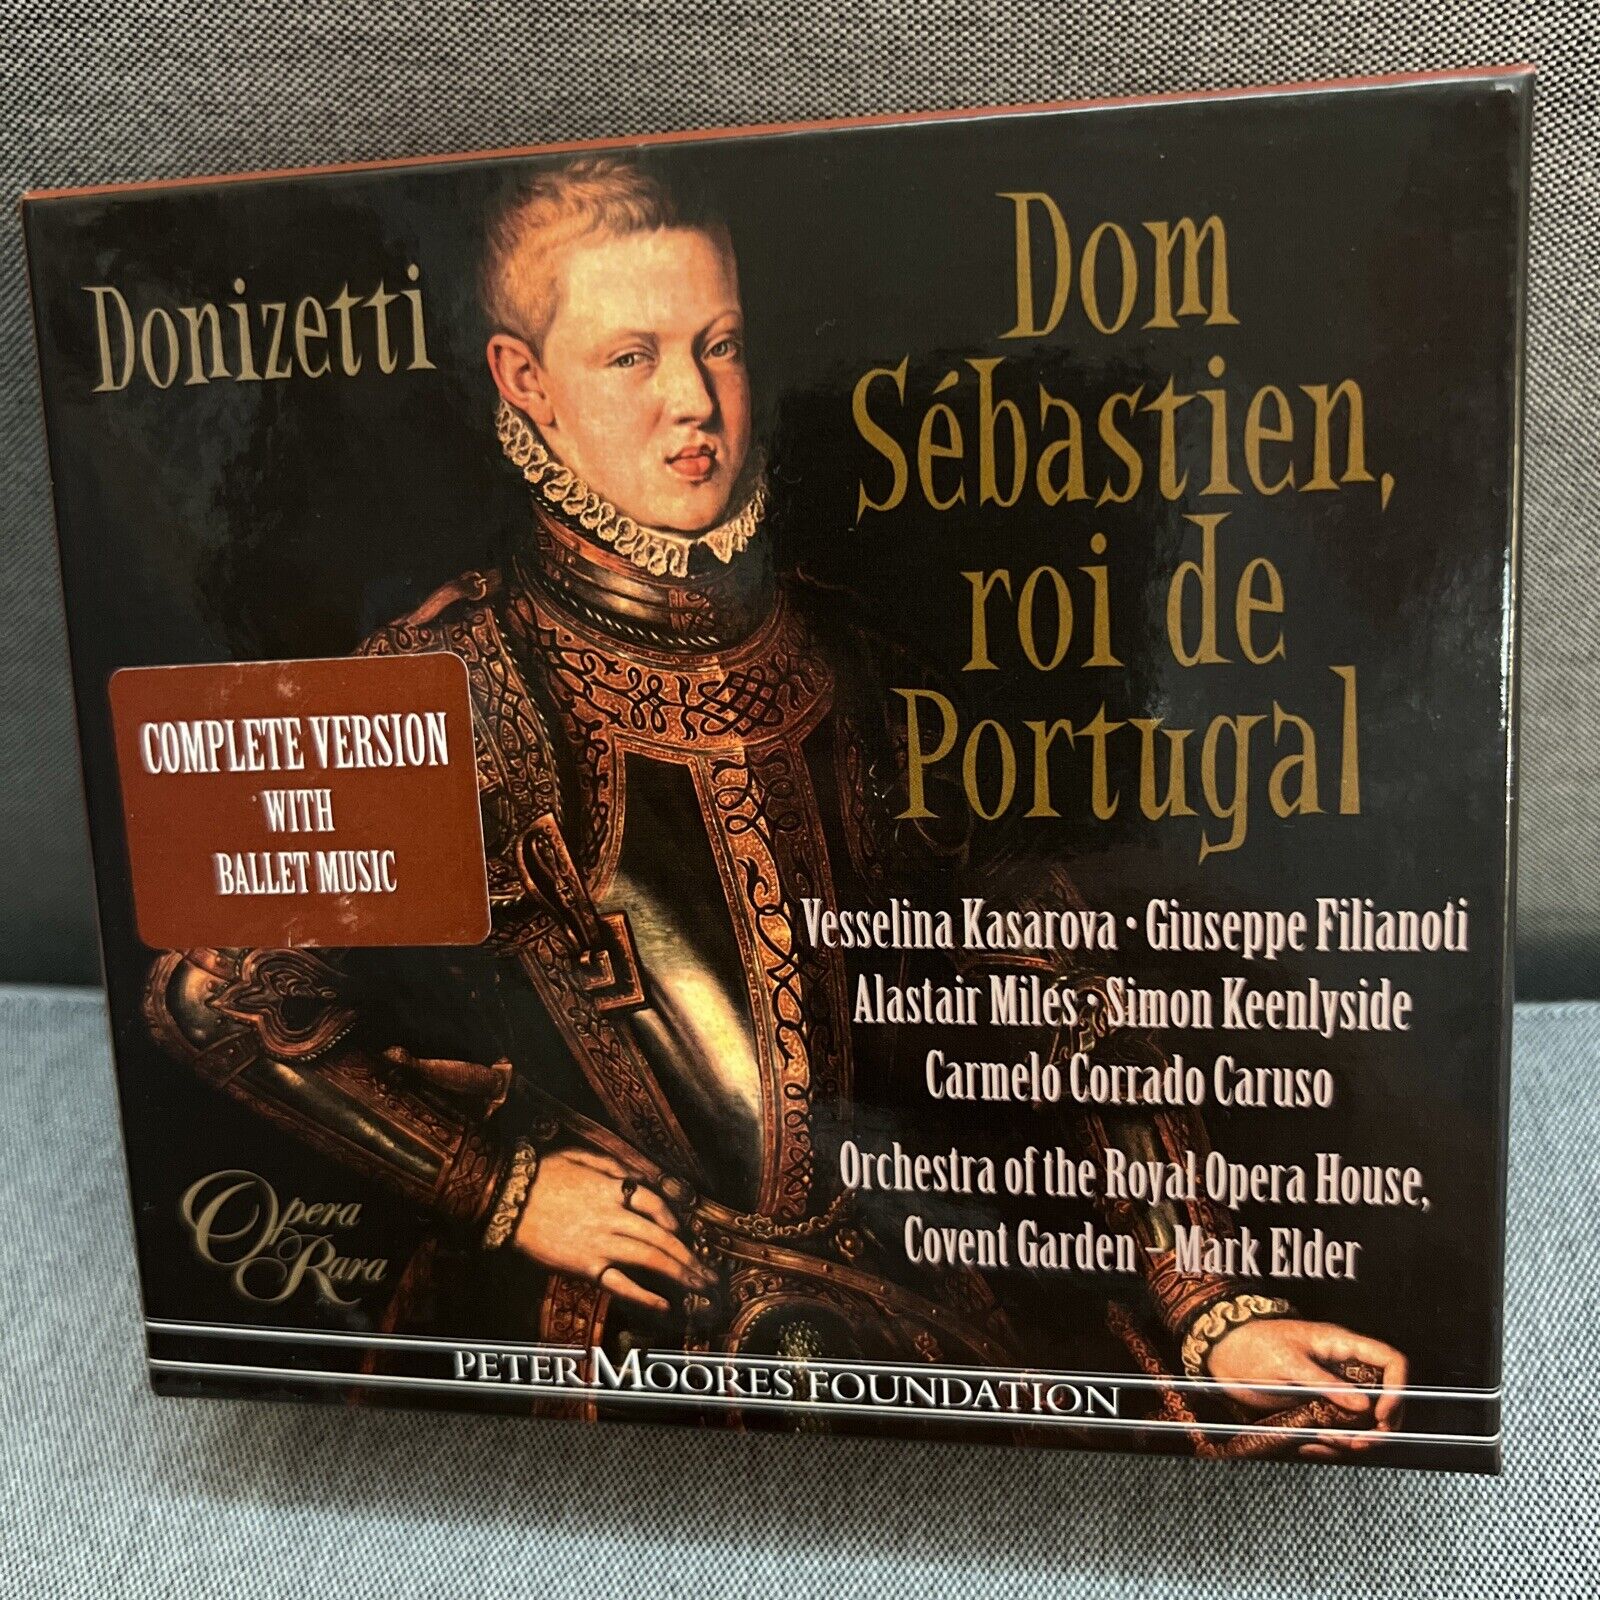 Donizetti - Dom Sebastien, roi de Portugal, 3 CD Box Set, Opera Rara, Mark Elder